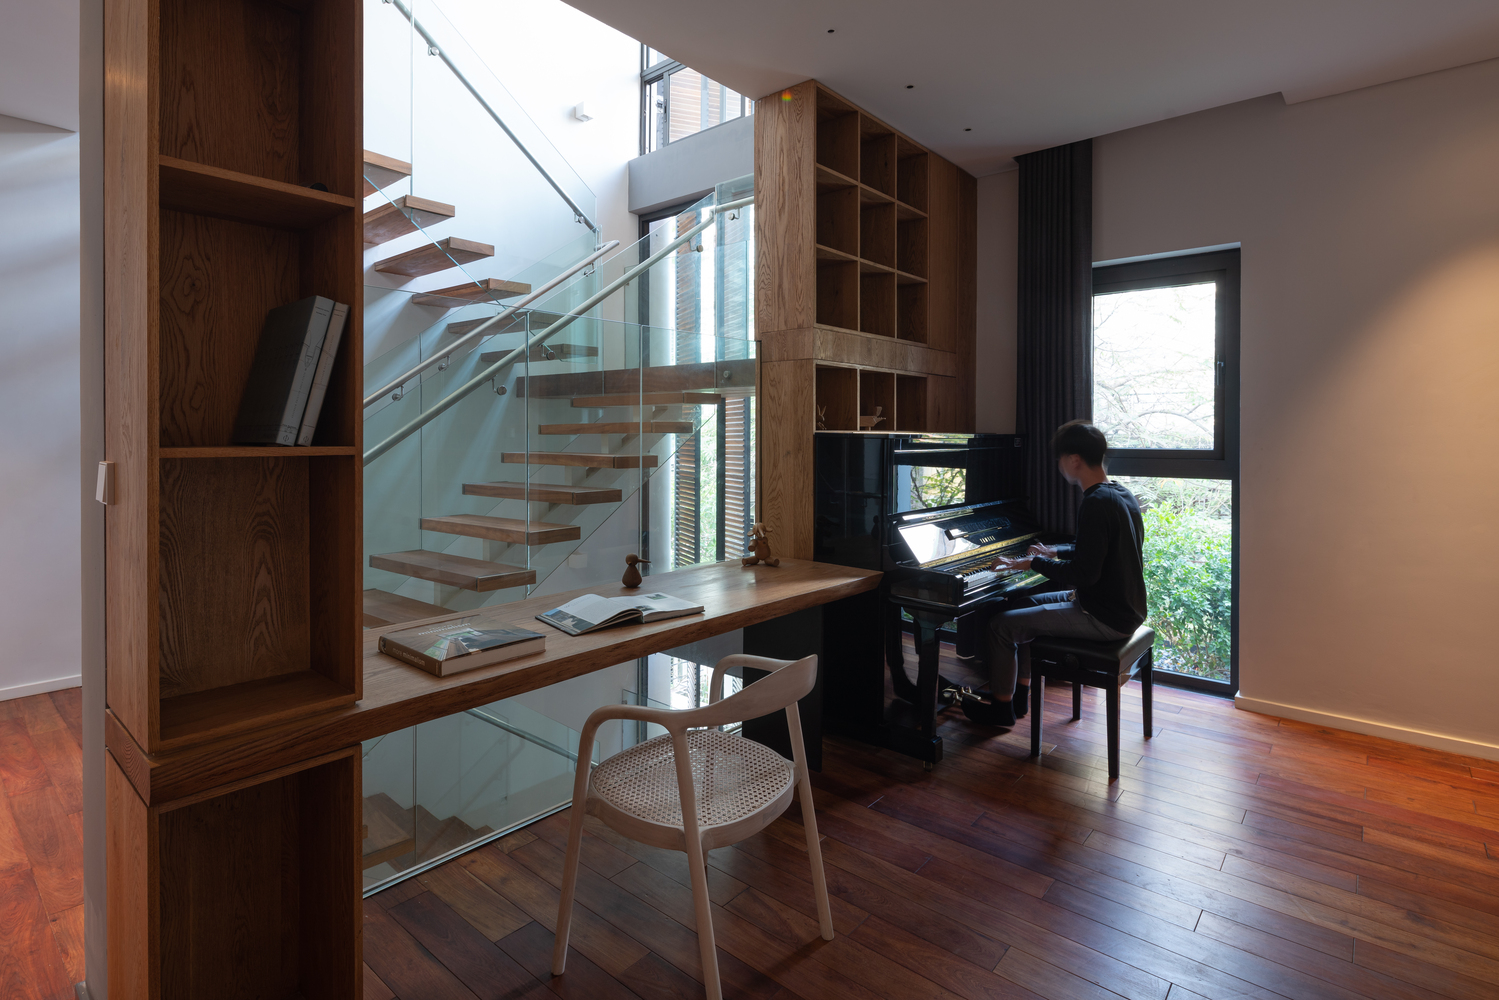 Hình ảnh góc làm việc và thư giãn cạnh cửa sổ kính thoáng sáng với đàn piano, bàn gỗ, tường kính